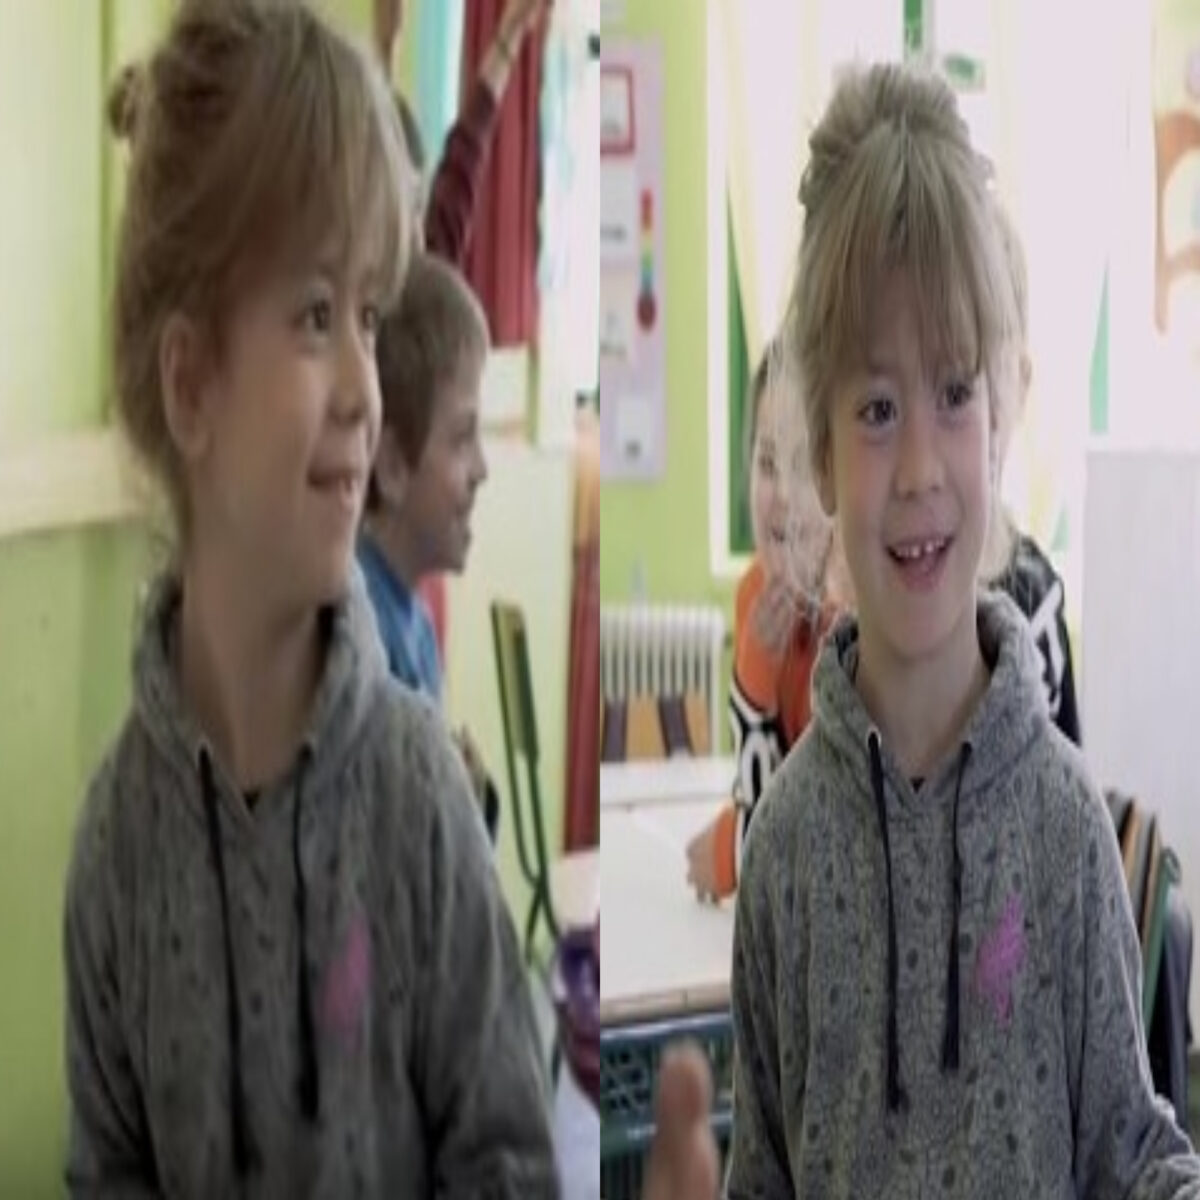 Συγκινητικό βίντεο: Μία σχολική τάξη μαθαίνει νοηματική για να επικοινωνεί με τη μικρή Ευαγγελία